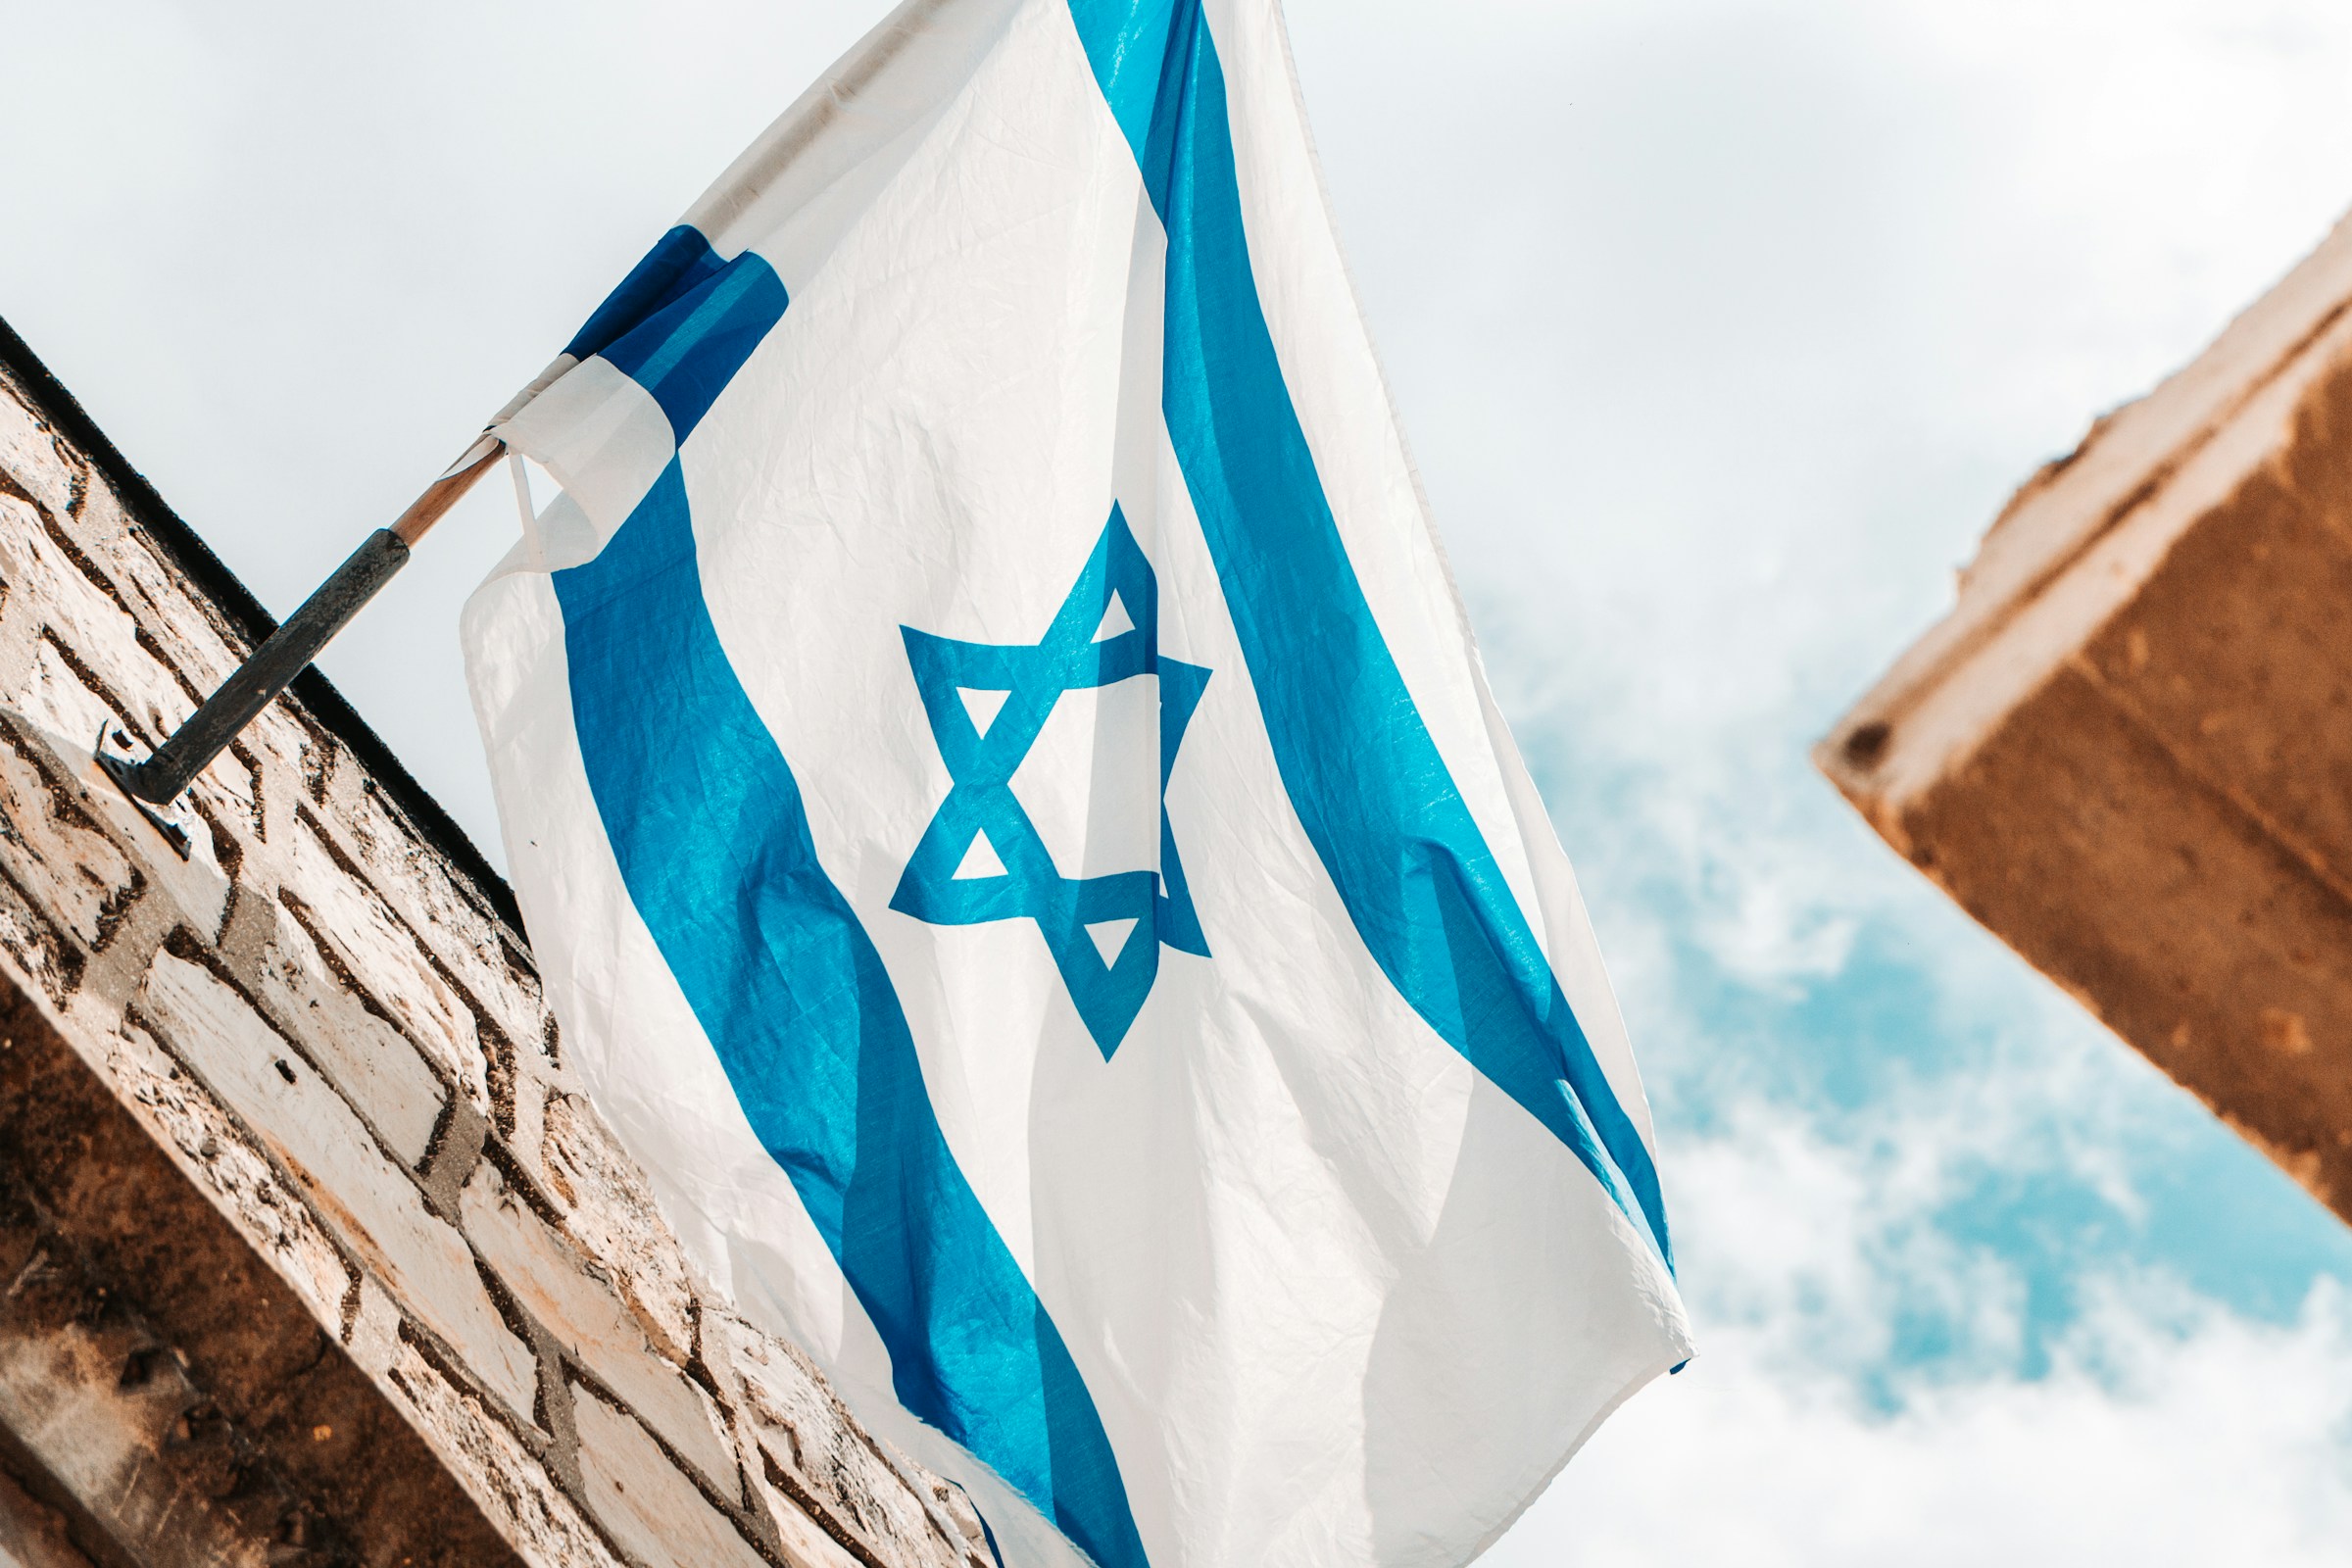 Шац*: «В Израиле меня раздражают бюрократия и отсутствие реальных политиков»